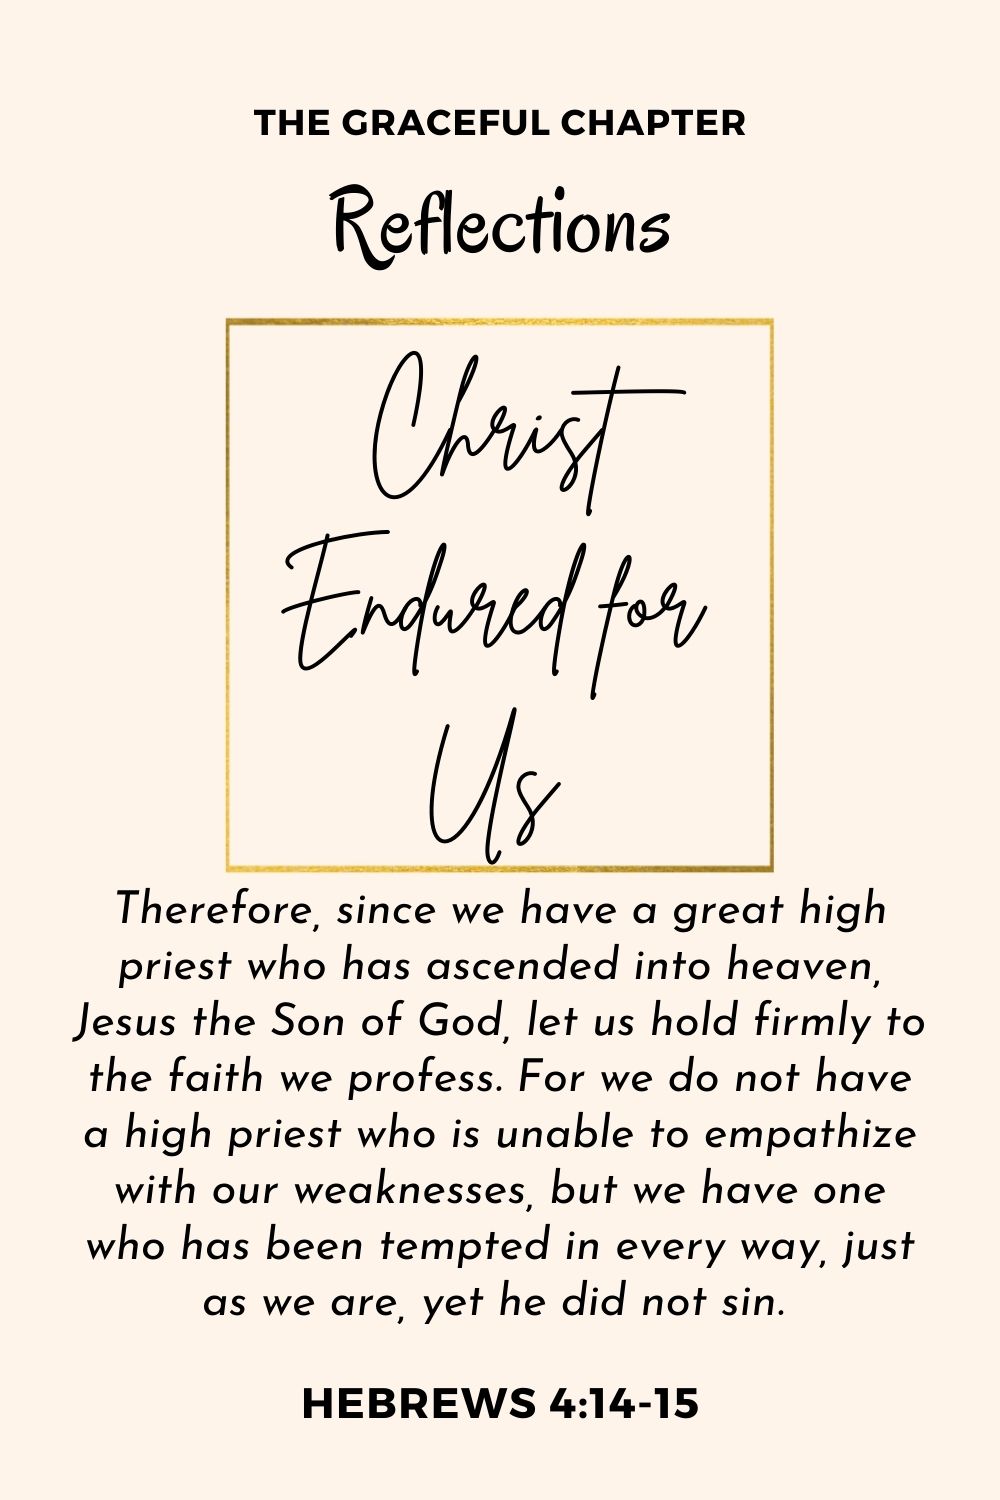 Reflection - Hebrews 4:14-15 - Christ Endured for Us